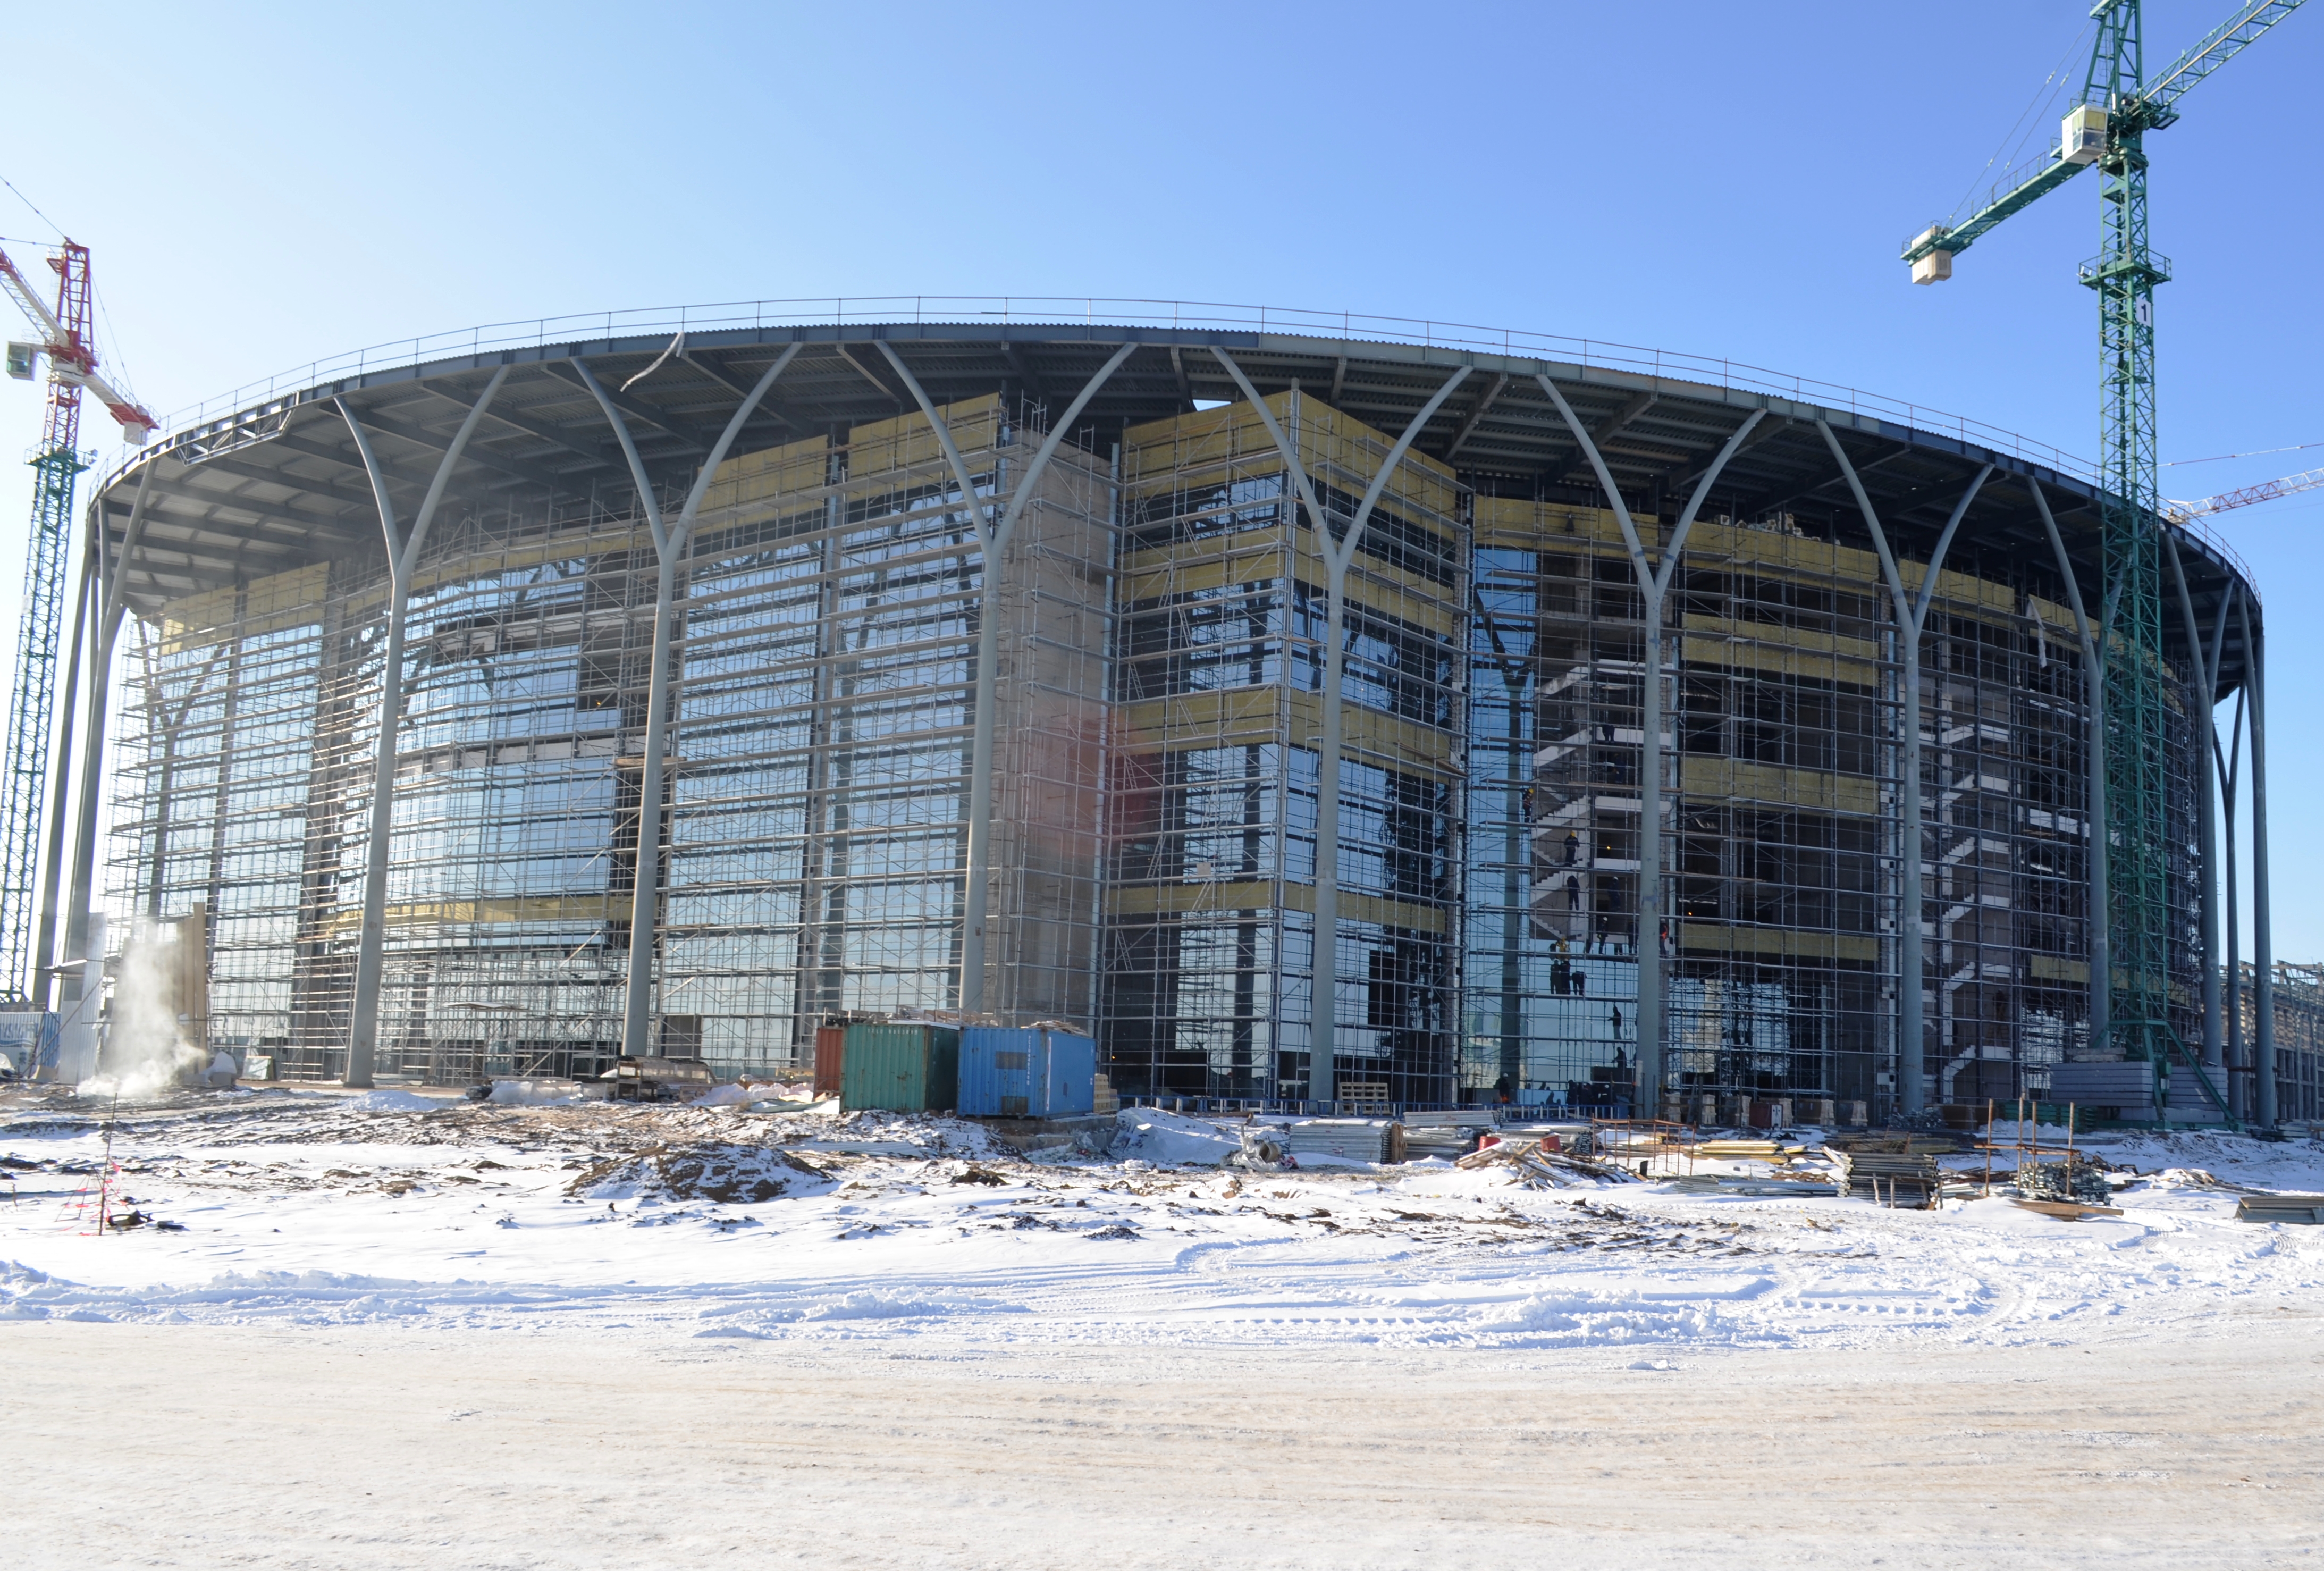 Arena Hockey Stadium, Astana, Kazakhstan